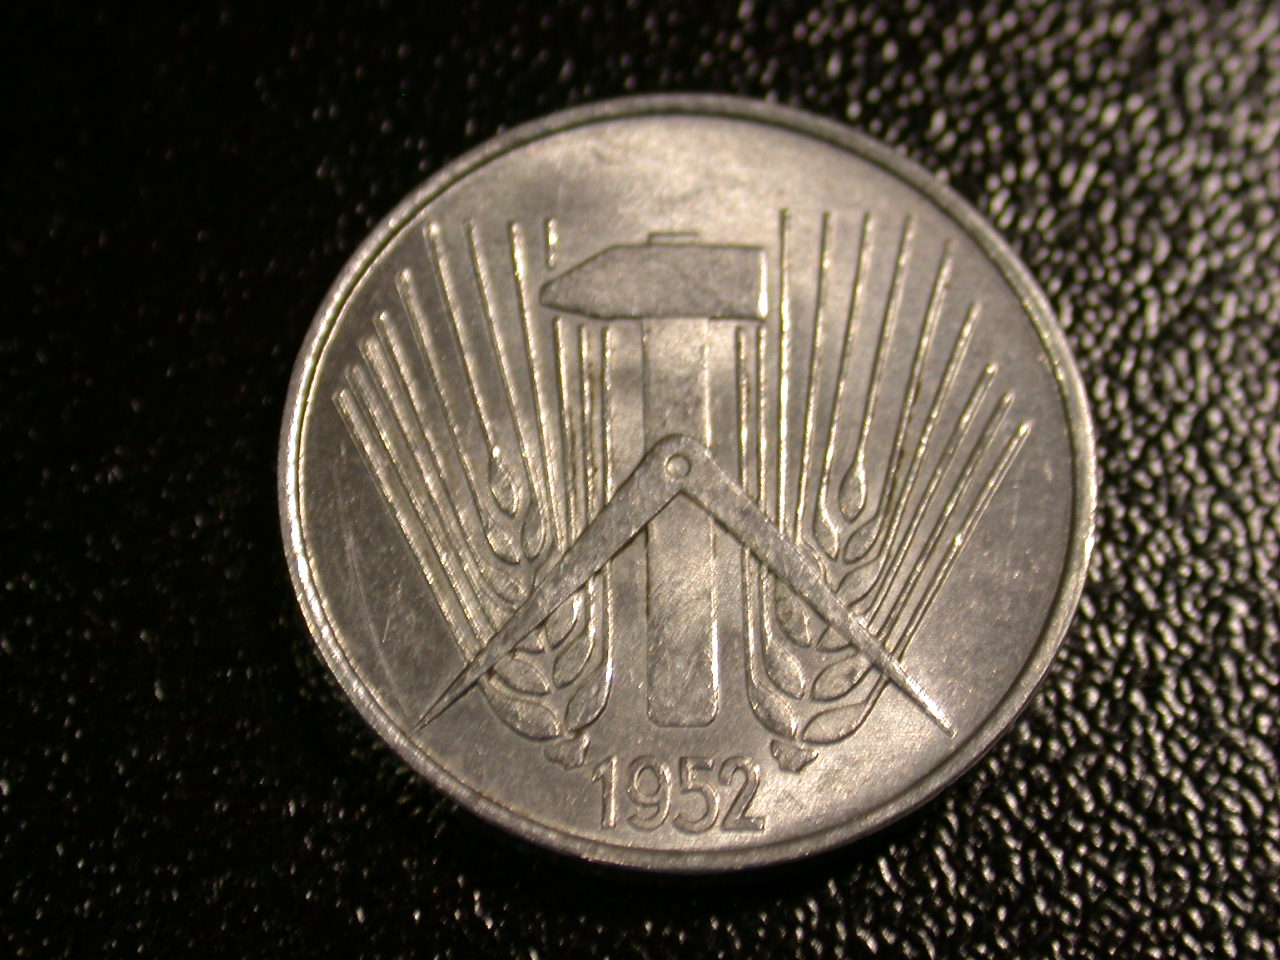  12045  DDR   5 Pfennig  1952 A  in vz-st   